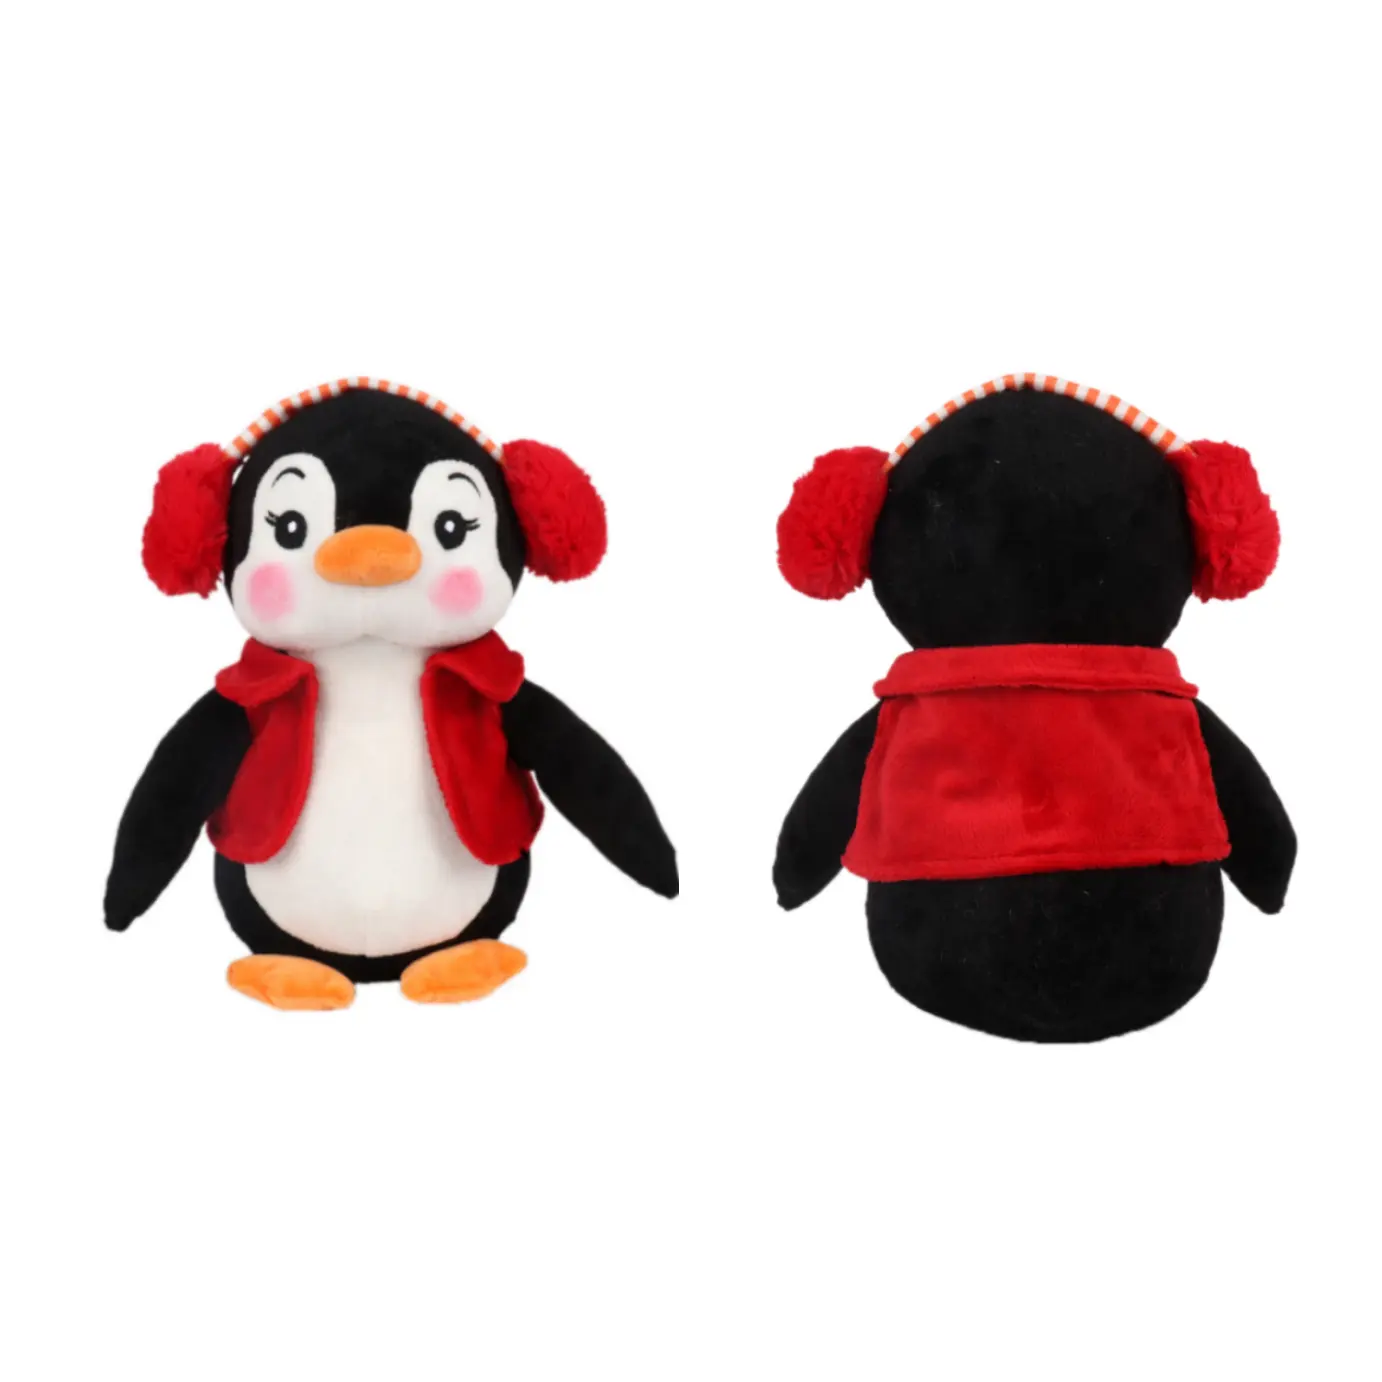 Mini giocattoli di peluche personalizzati di pinguino di natale per bambini